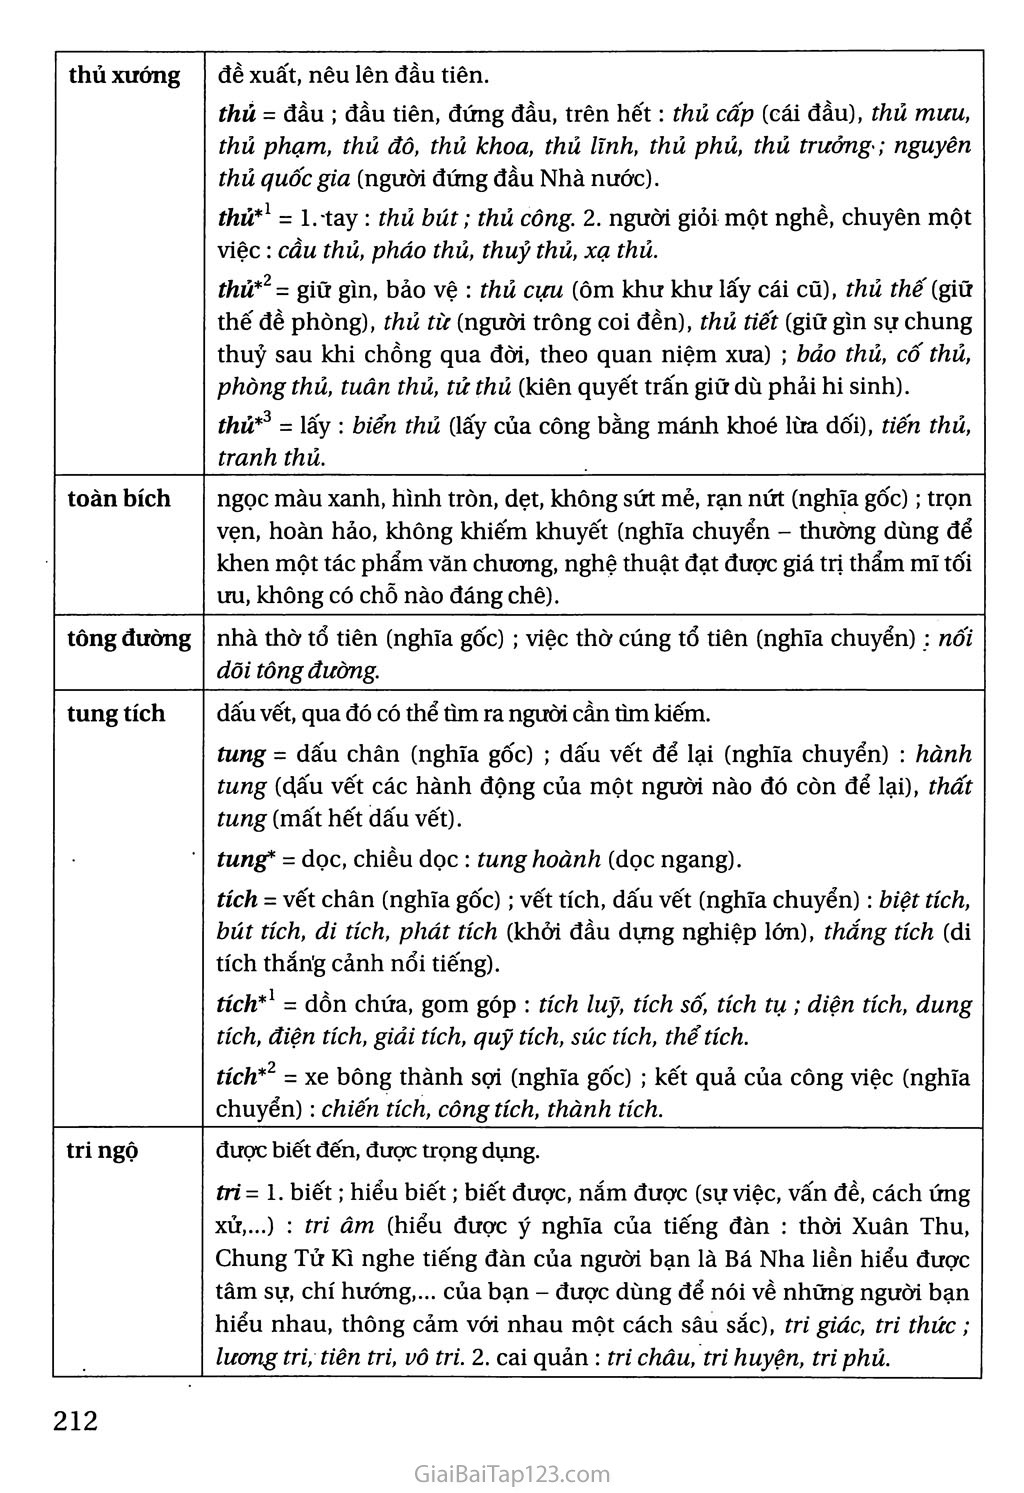 Bảng tra cứu từ Hán Việt trang 7